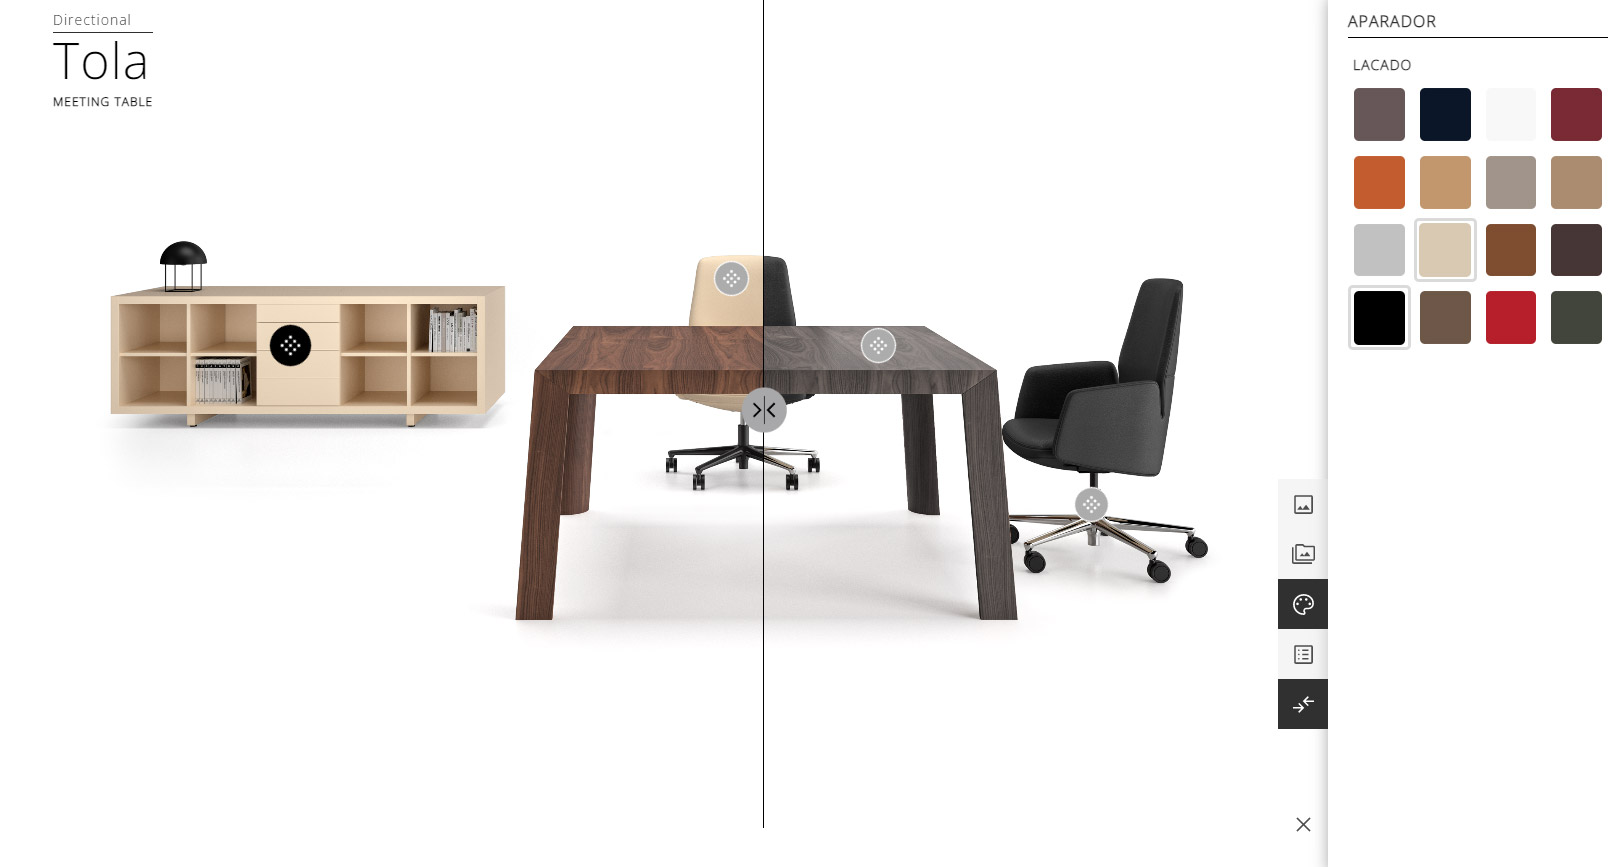 Office Furniture Configurator - Comparator